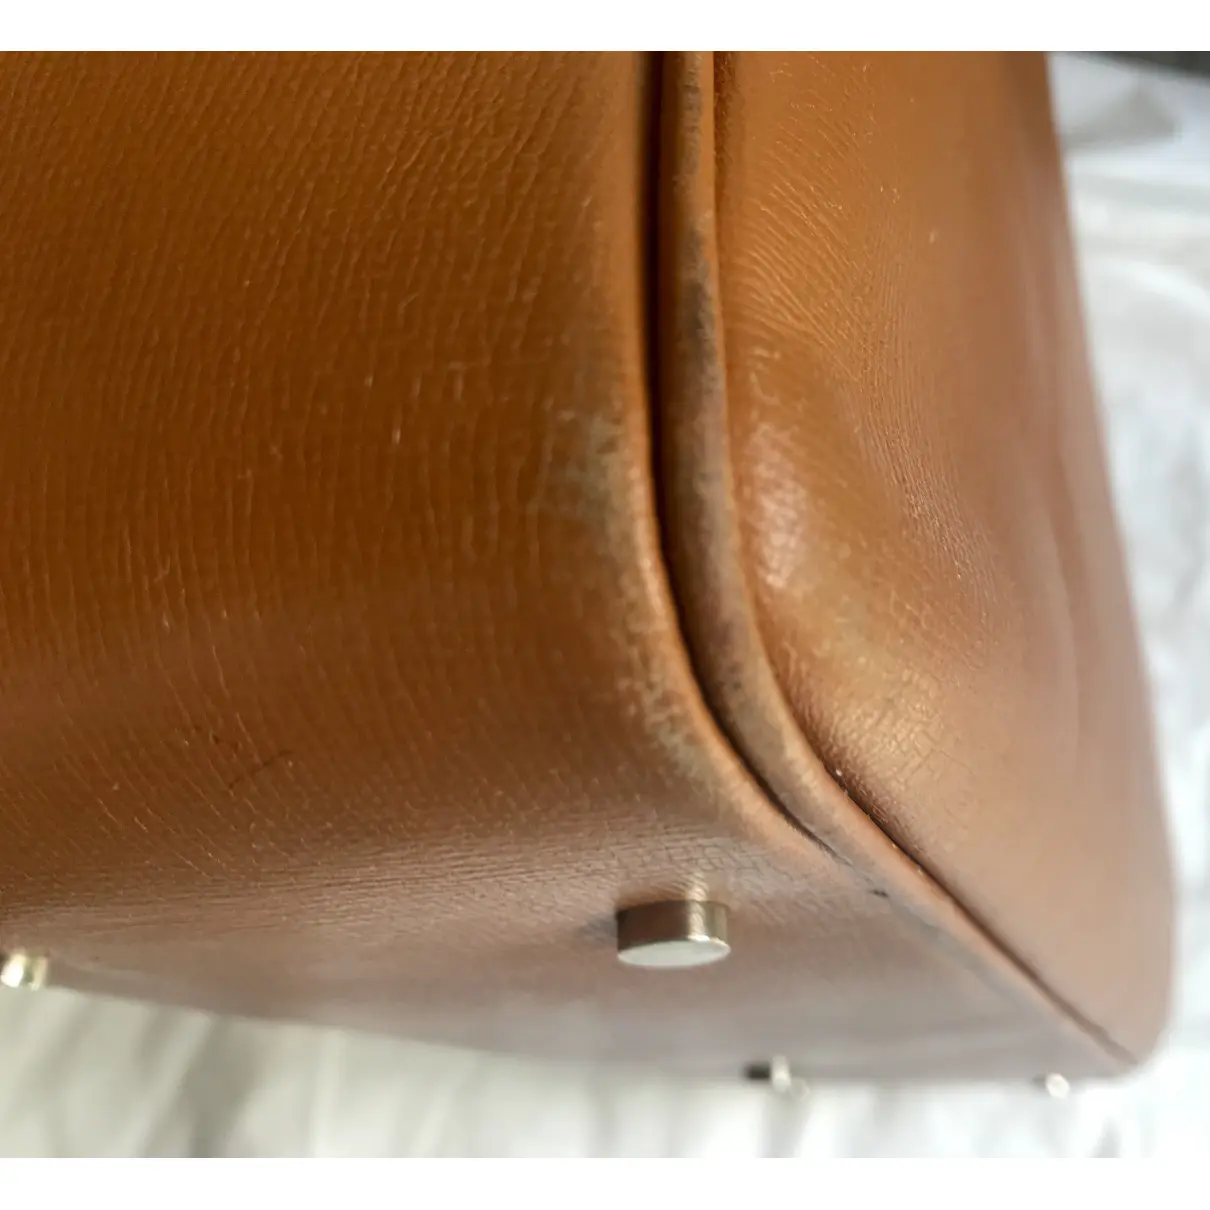 Leather handbag Valextra - Vintage